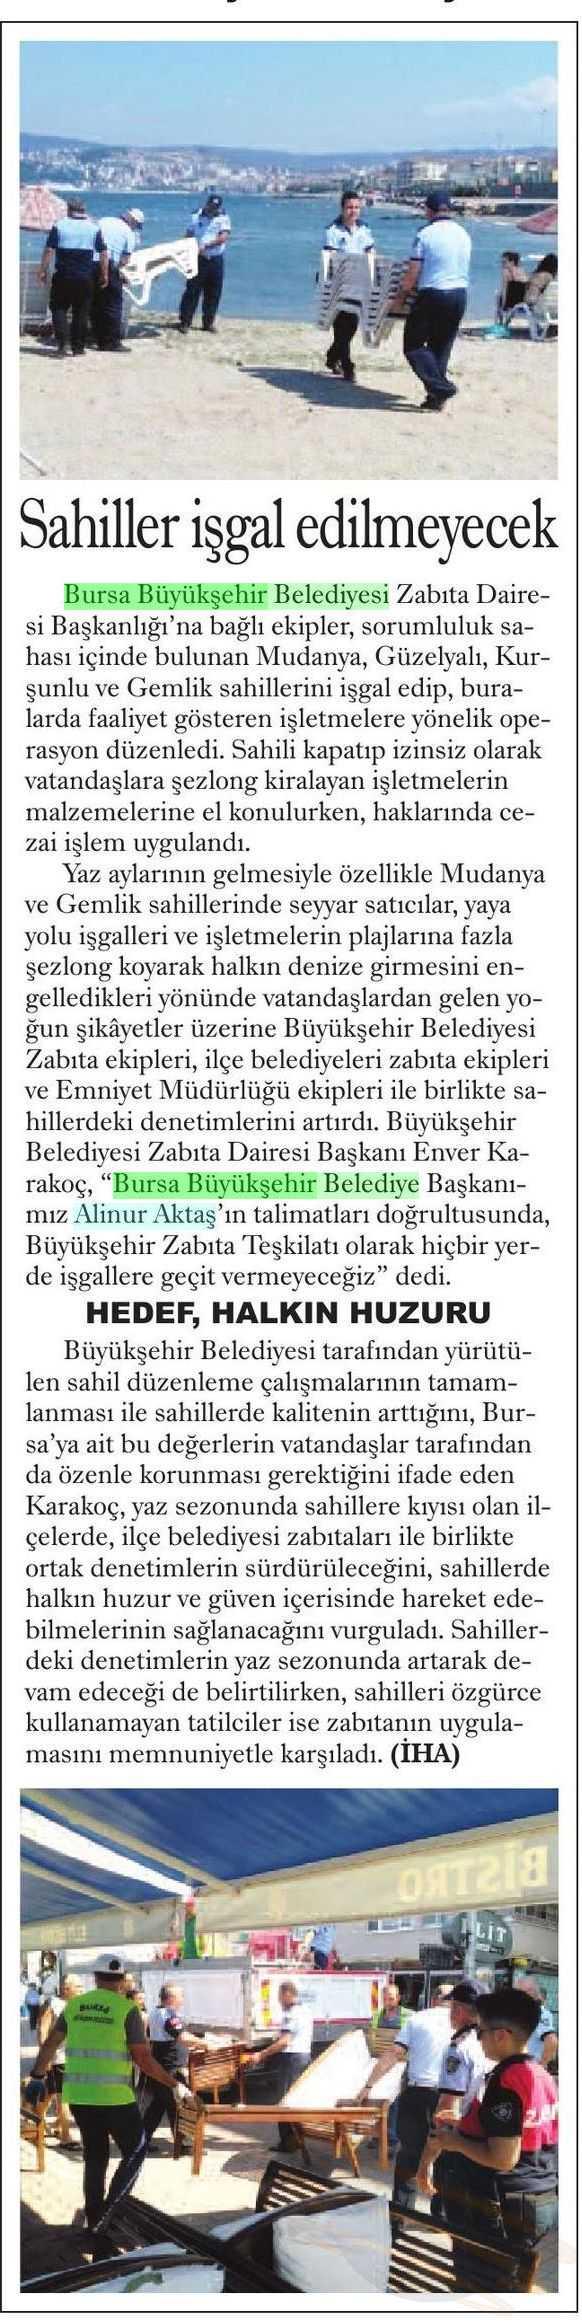 SAHILLER ISGAL EDILMEYECEK Yayın Adı : Yeni Marmara Gazetesi